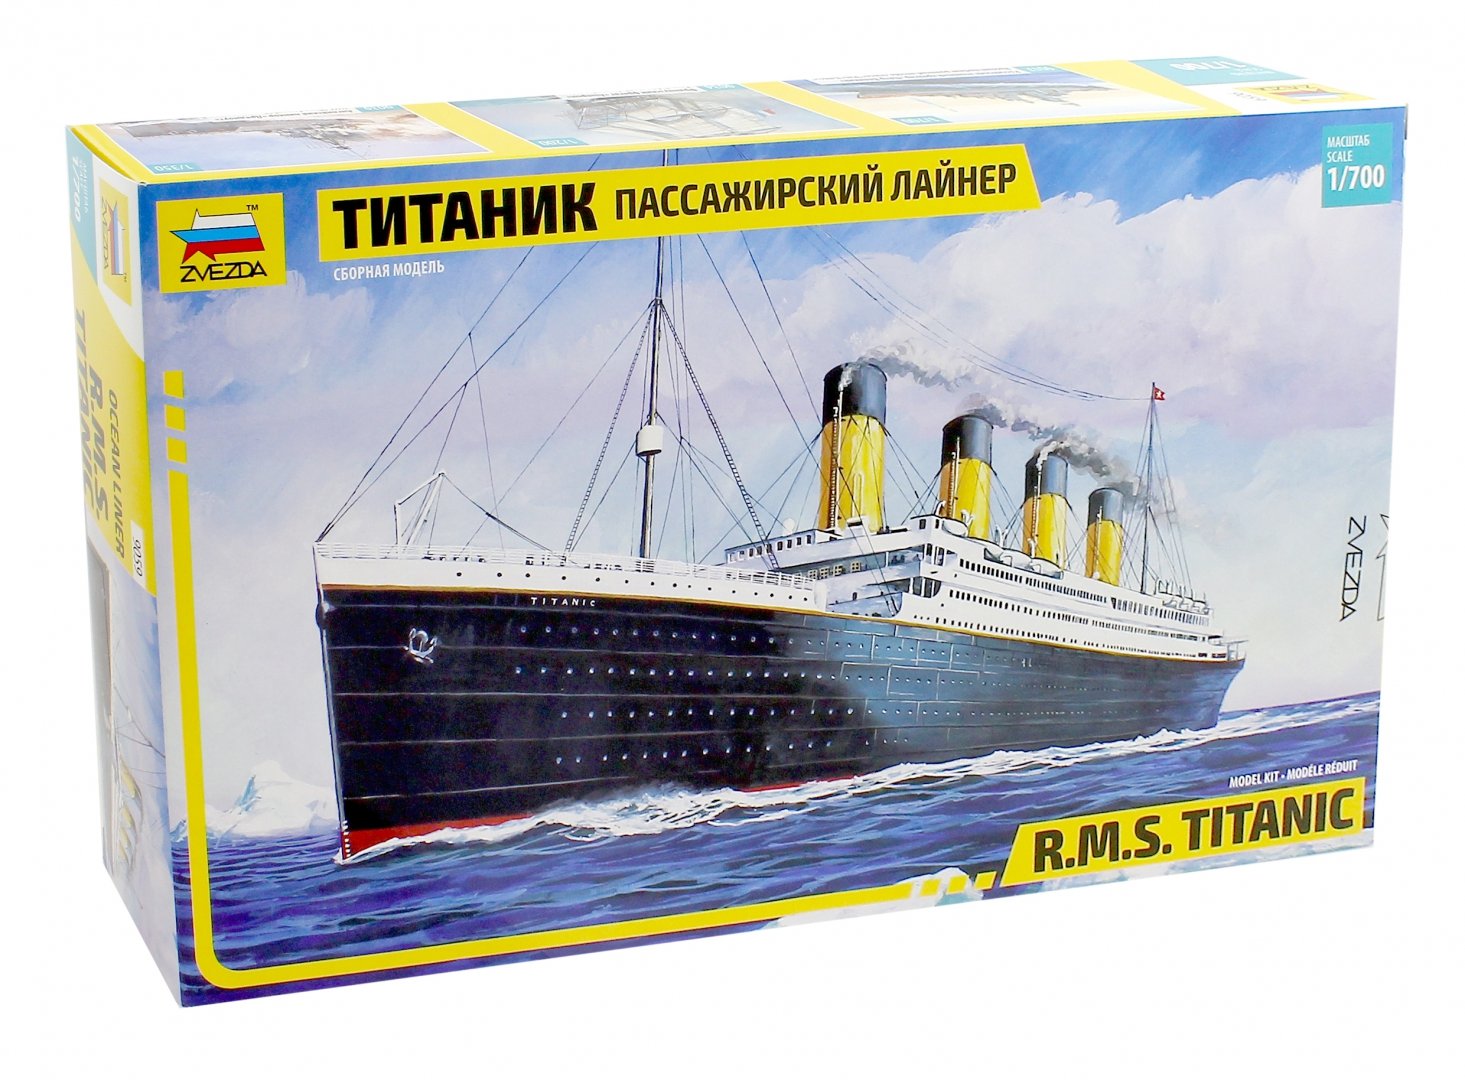 Иллюстрация 1 из 8 для Пассажирский лайнер "Титаник" (9059) | Лабиринт - игрушки. Источник: Лабиринт